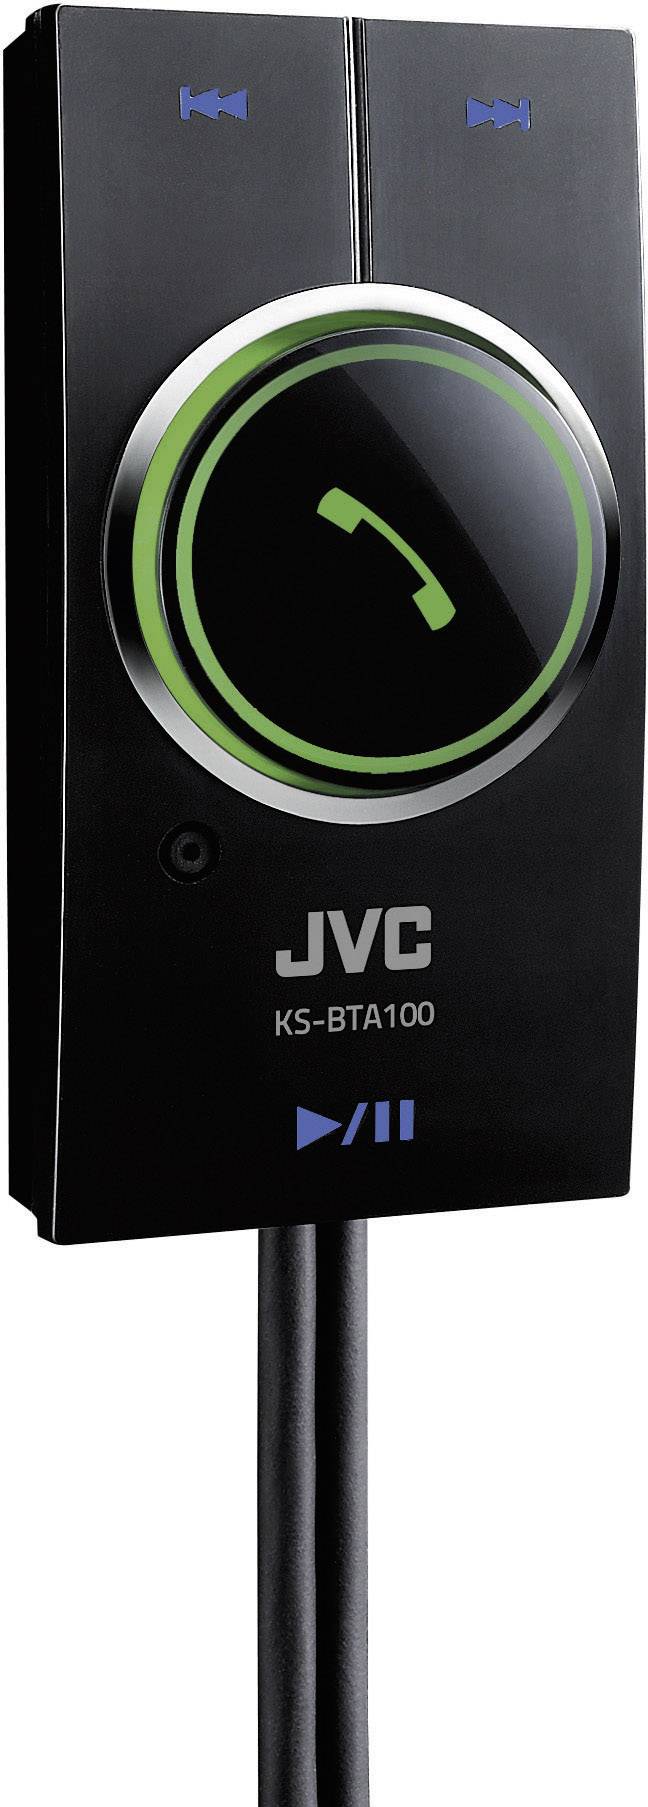 Bluetooth адаптер c. KS bta100 JVC. KS-bta100 Bluetooth адаптер. Блютуз адаптер JVC KS-bta100. KS-bta100 Bluetooth адаптер JVC.